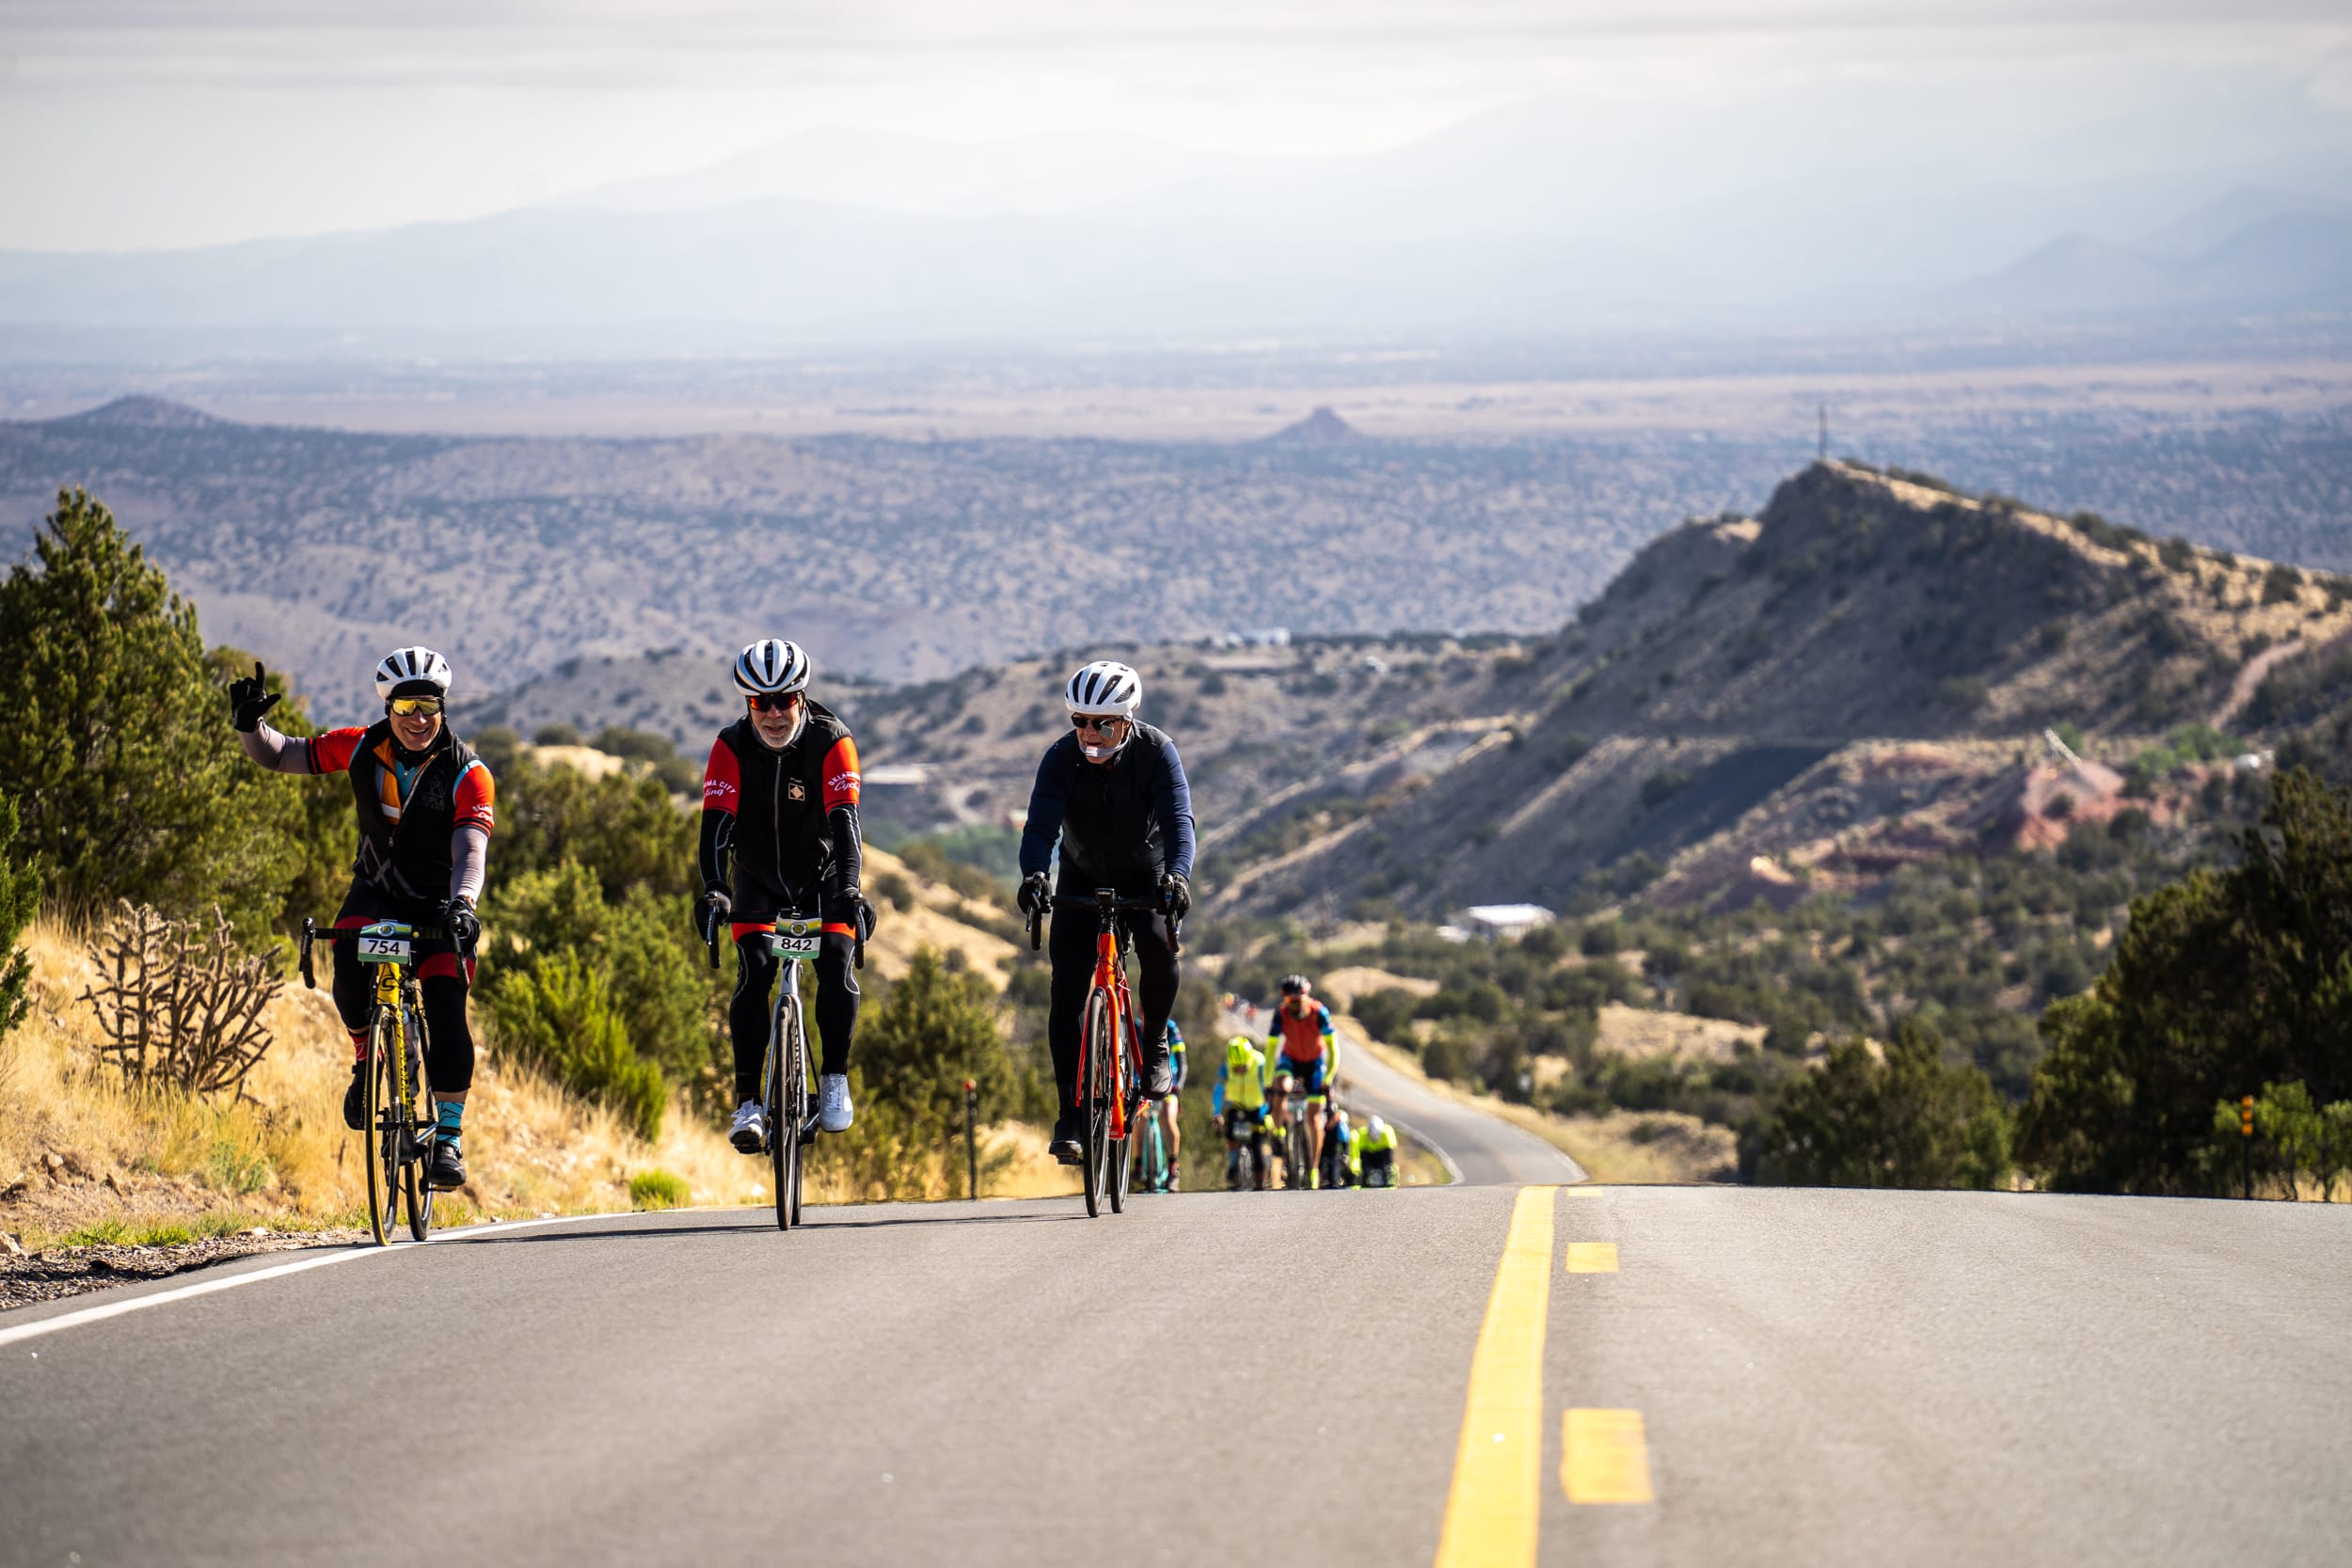 Santa Fe Century cyclists climbing a hill